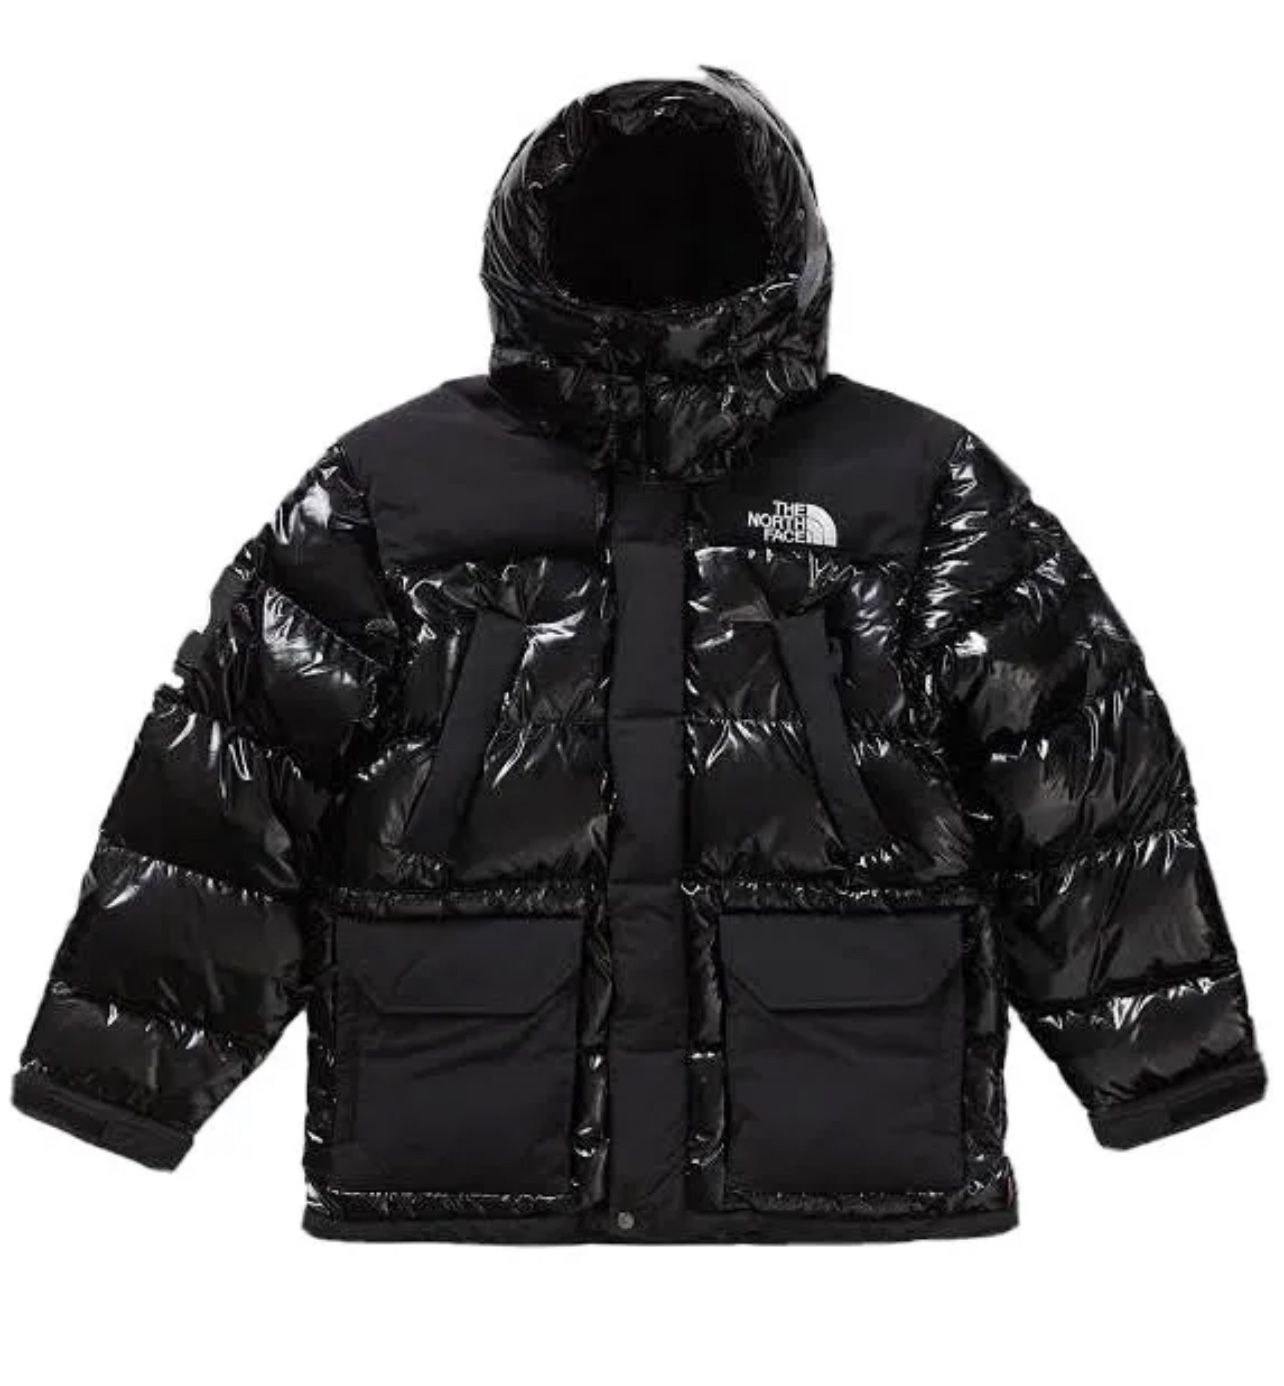 Supreme The North Face 700-Fill Down Parka Black Dragon Coat